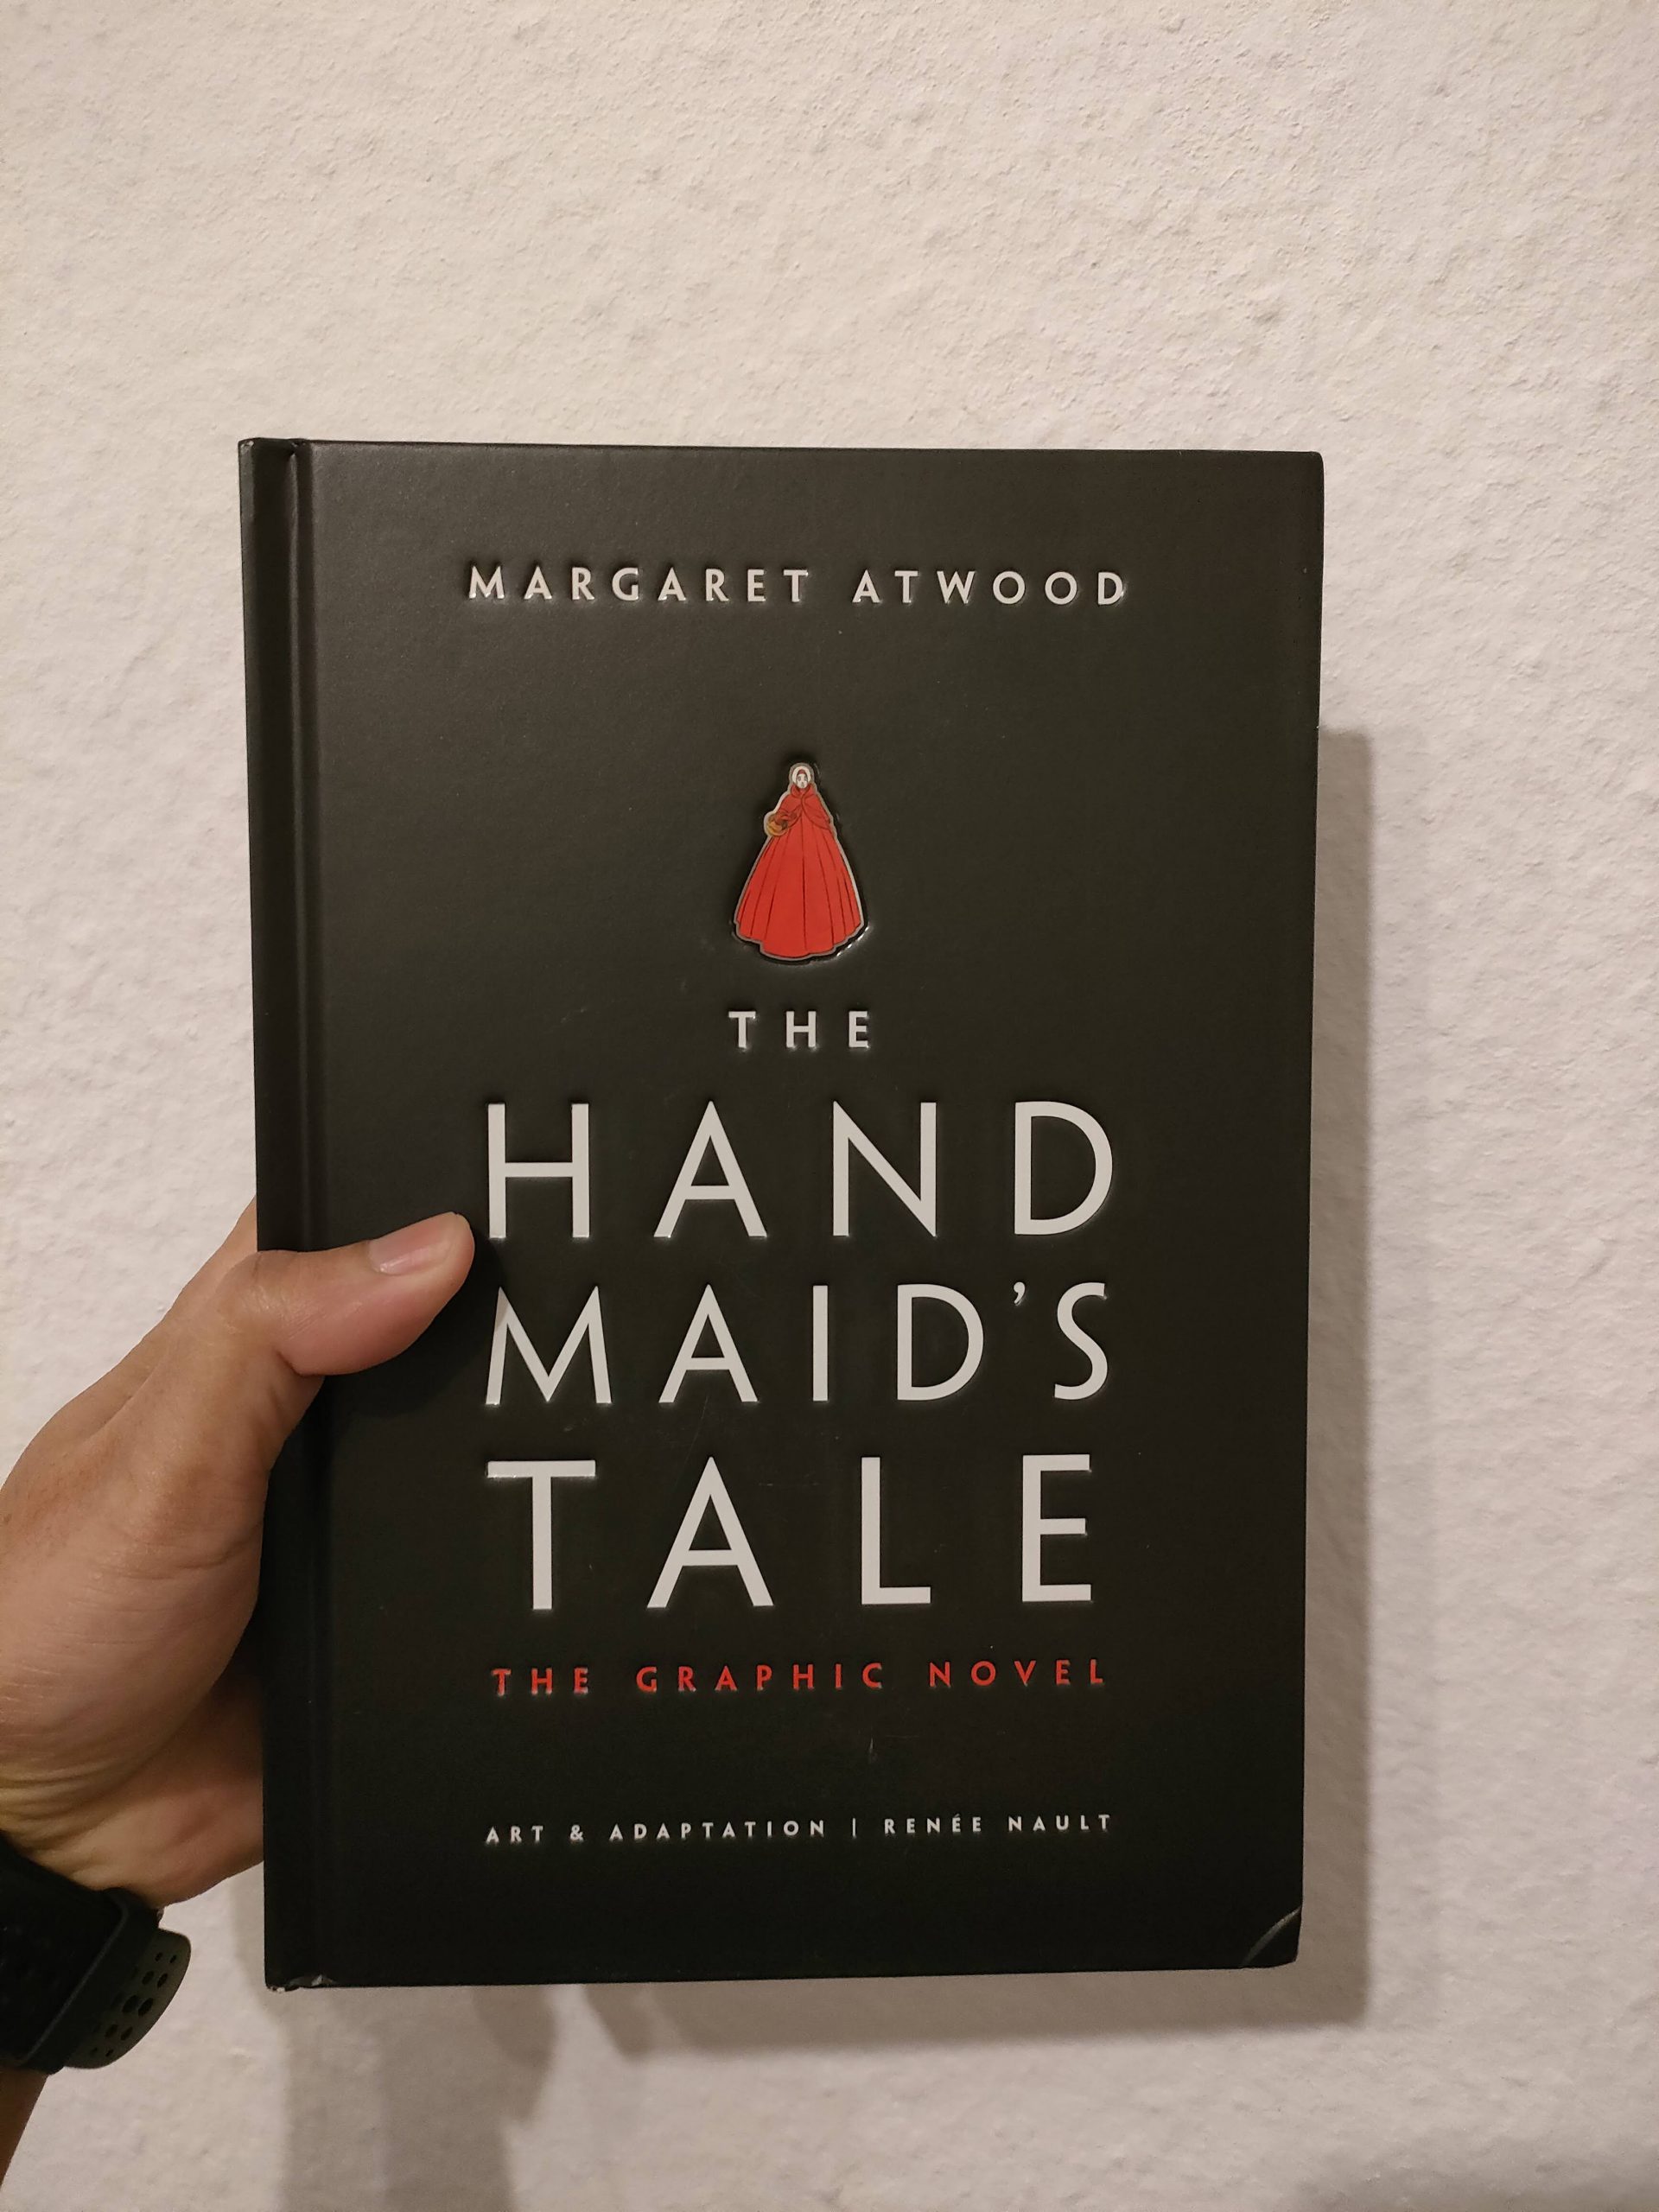 หนังสือ The Handmaid's Tale ฉบับ Graphic novel